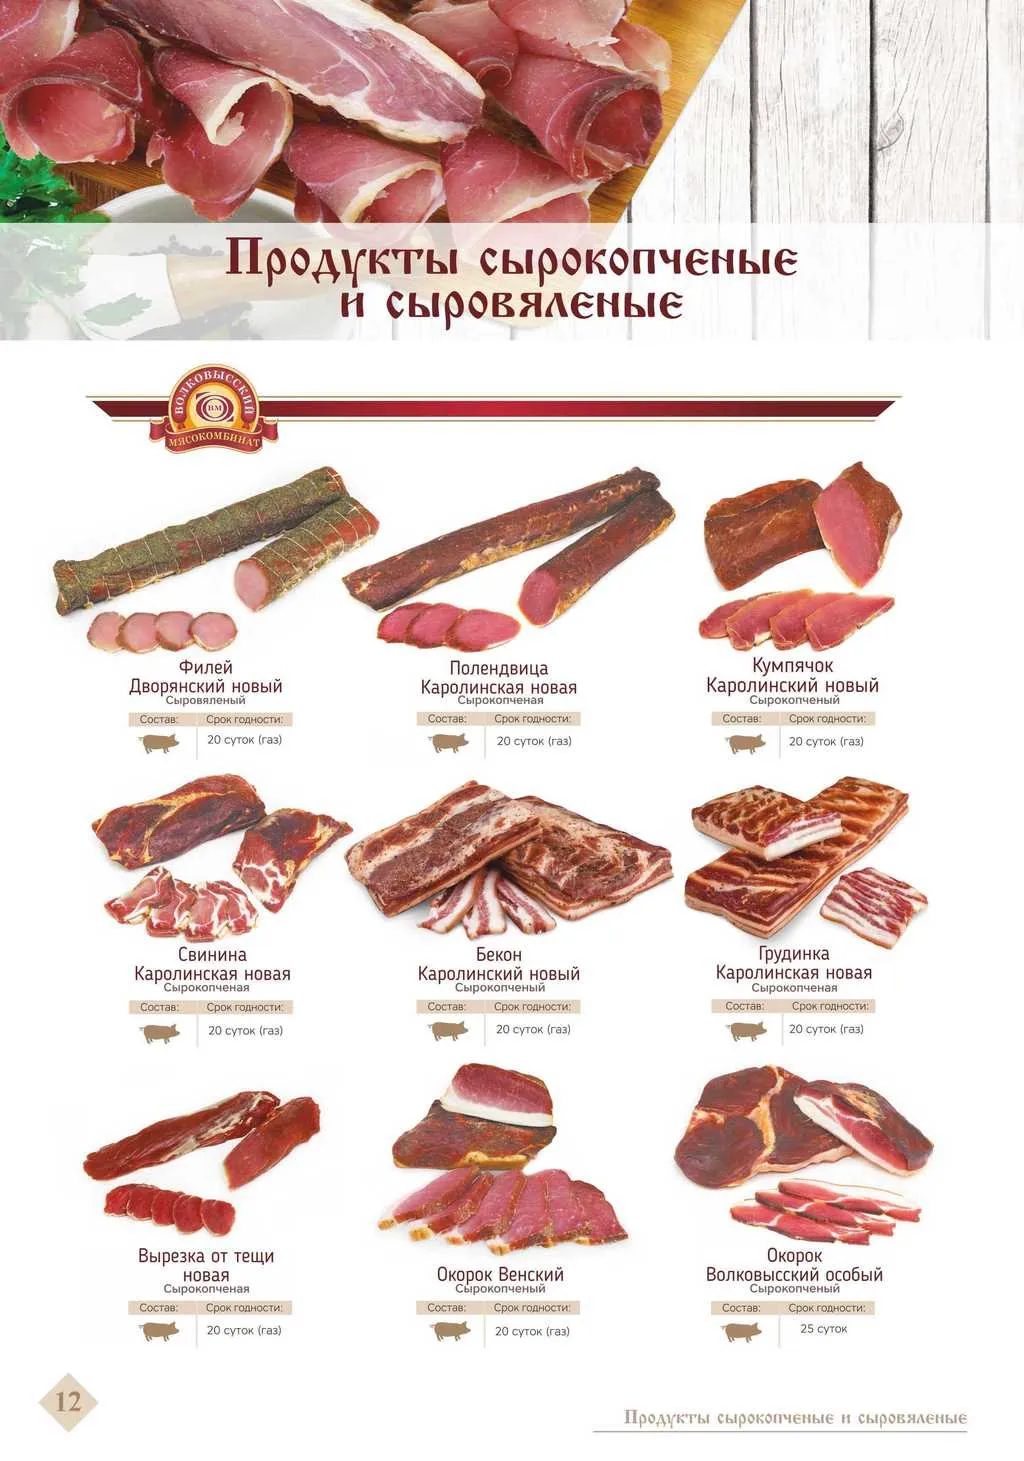  Реализует Белорусские колбасы в Москве 2